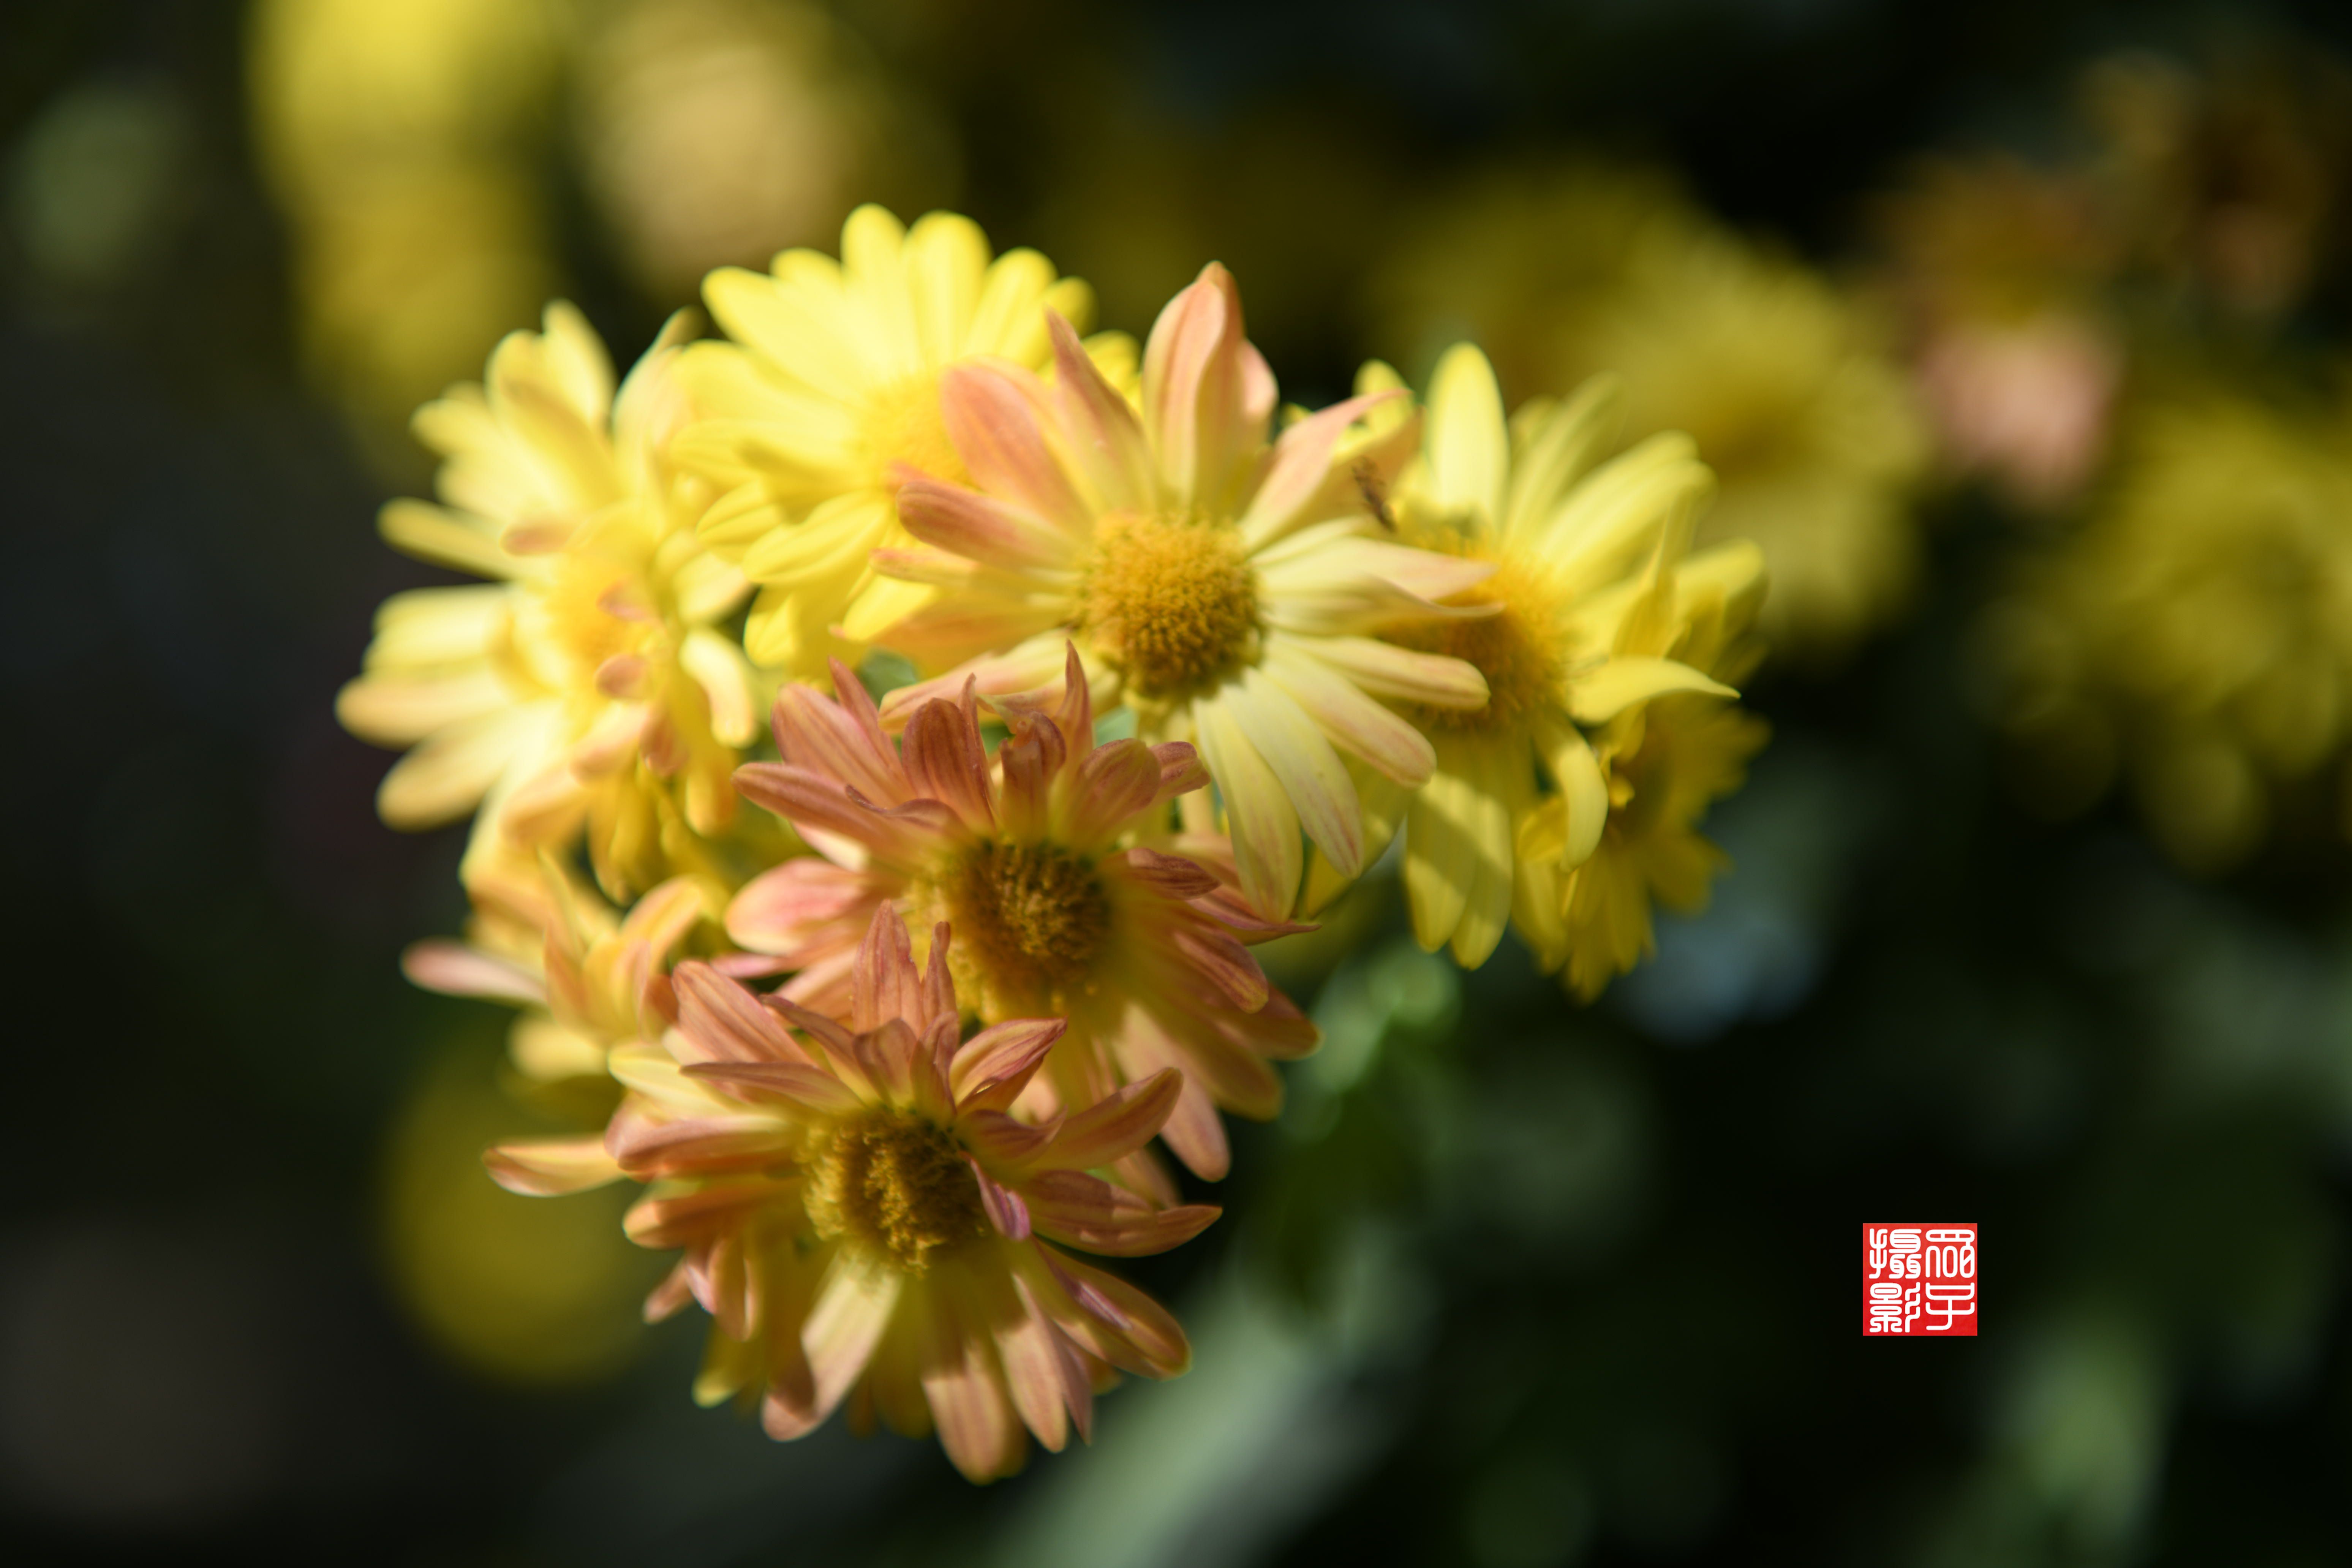 期待已久的2021精品菊花展即将上线 -上海市文旅推广网-上海市文化和旅游局 提供专业文化和旅游及会展信息资讯